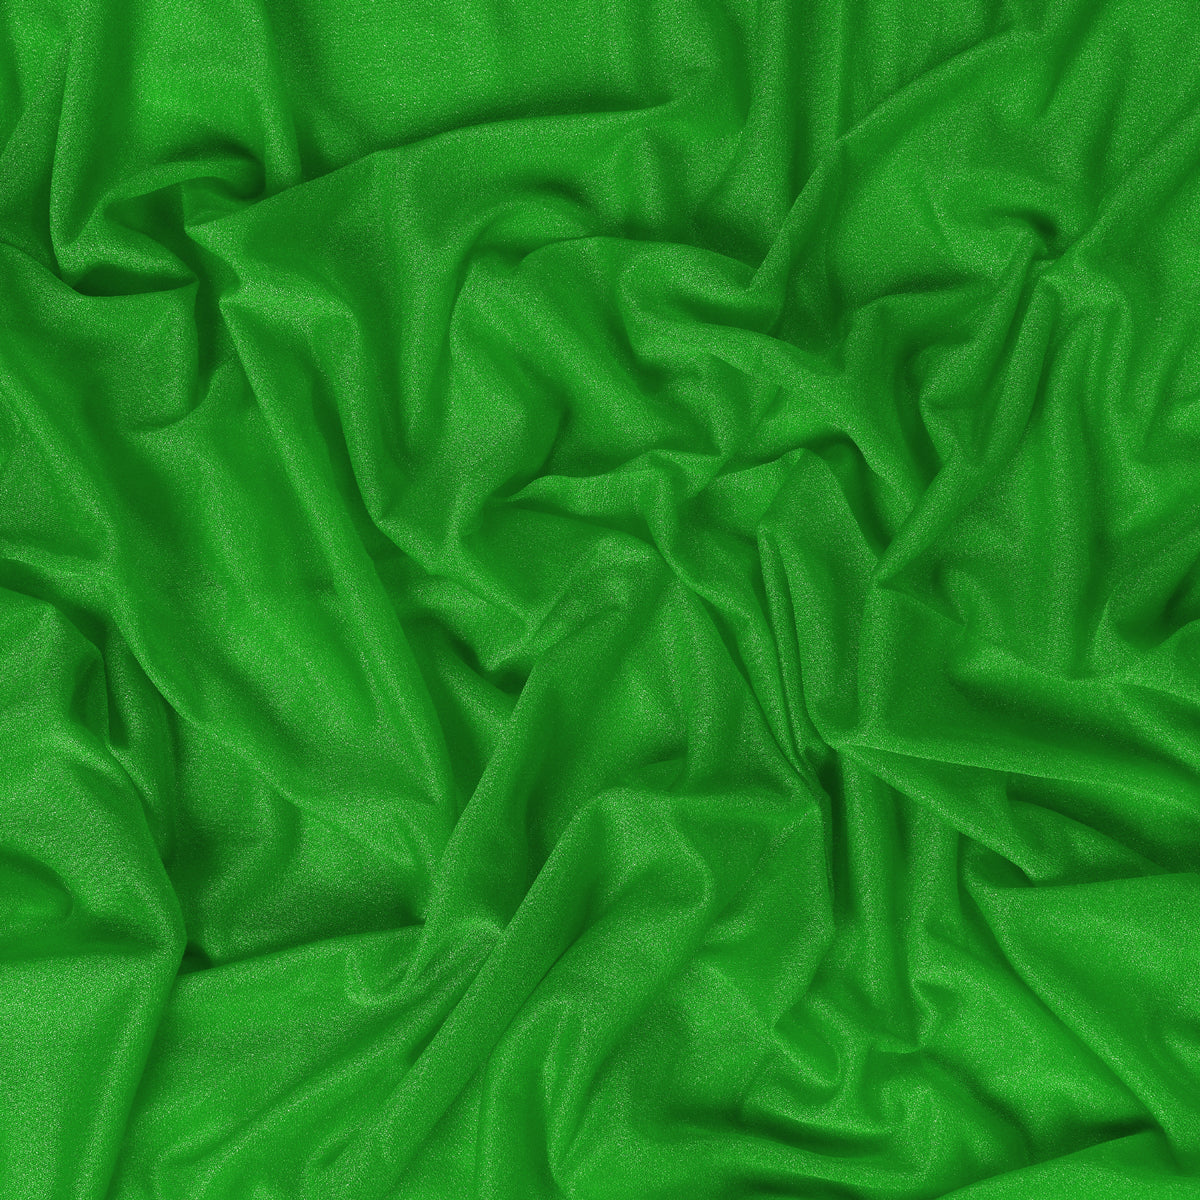 Green,f491bda0-f3b1-4bca-a998-967ef70164d0